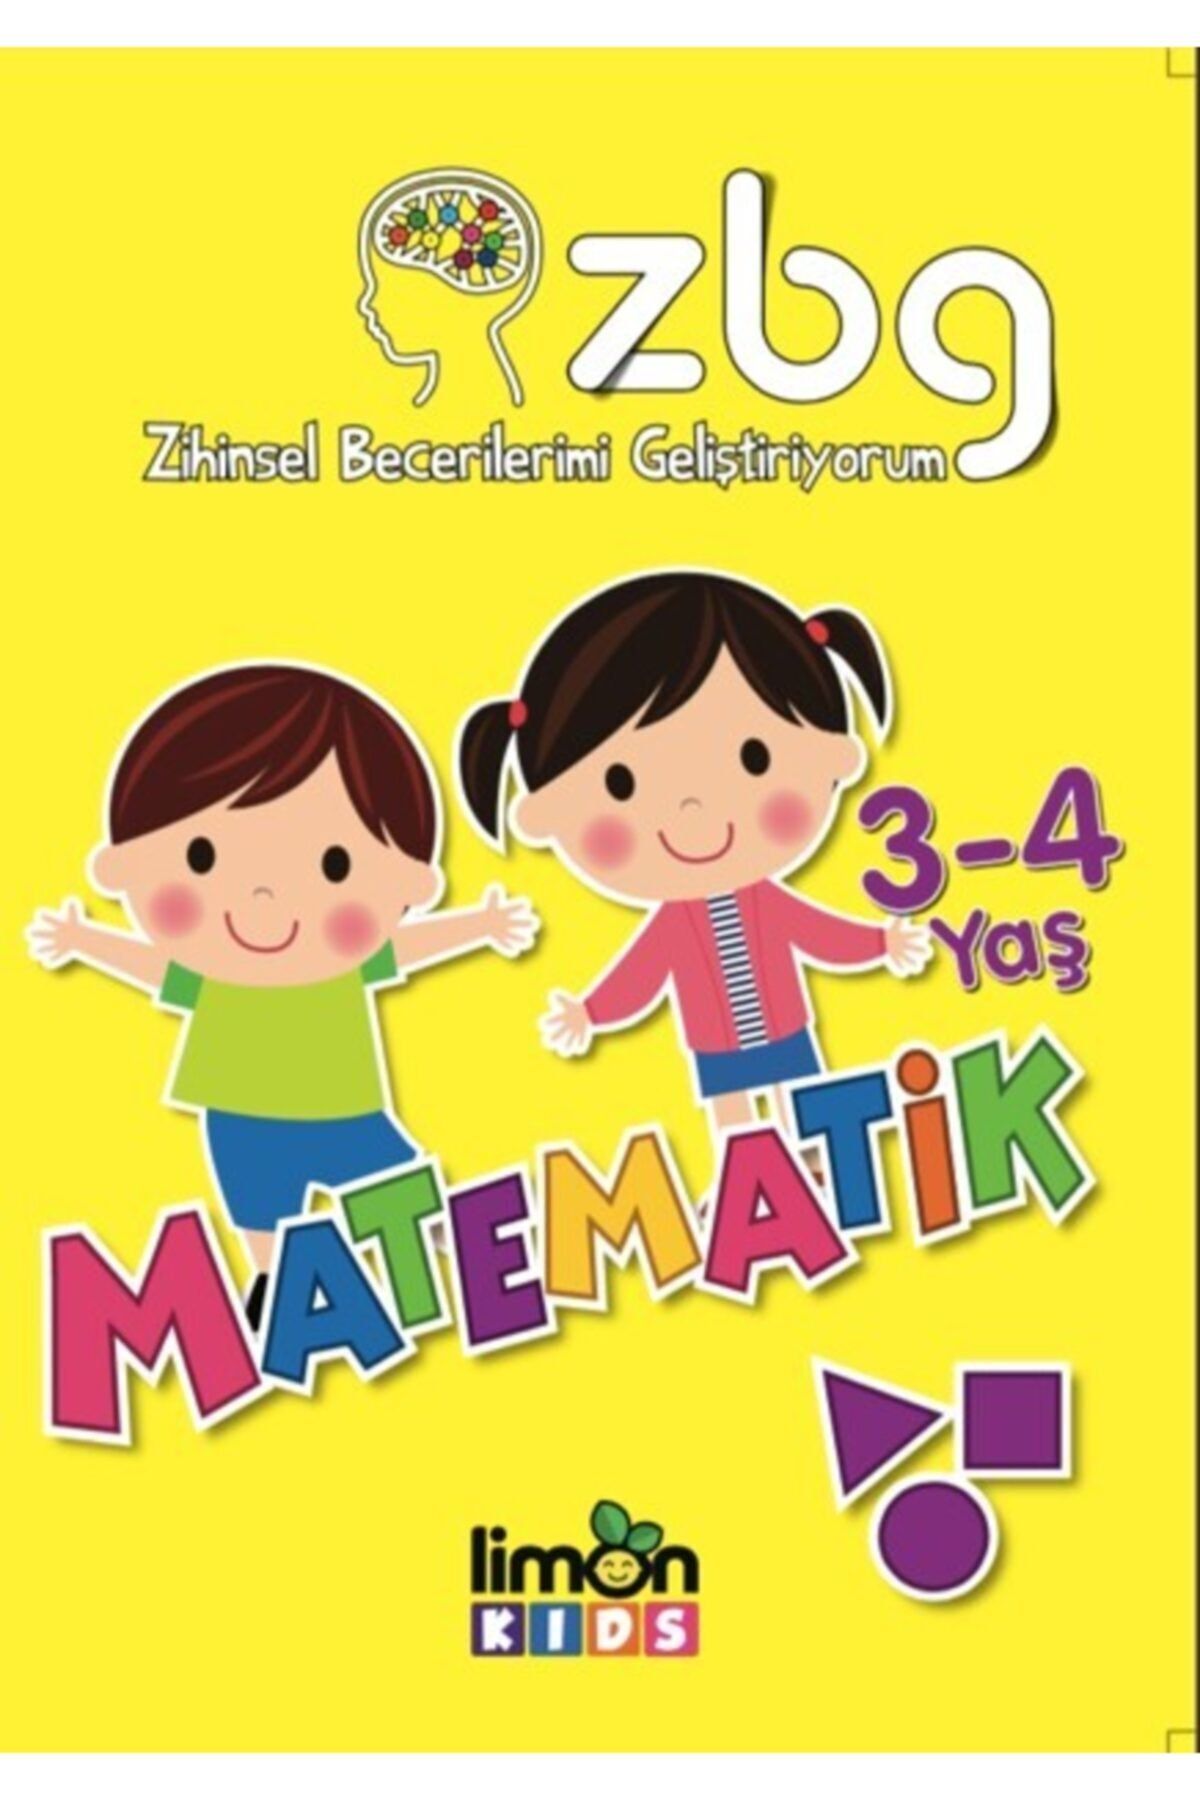 Limonkids Matematik 3-4 Yaş-zihinsel Becerilerimi Geliştiriyorum - Limon Kids Yayınları